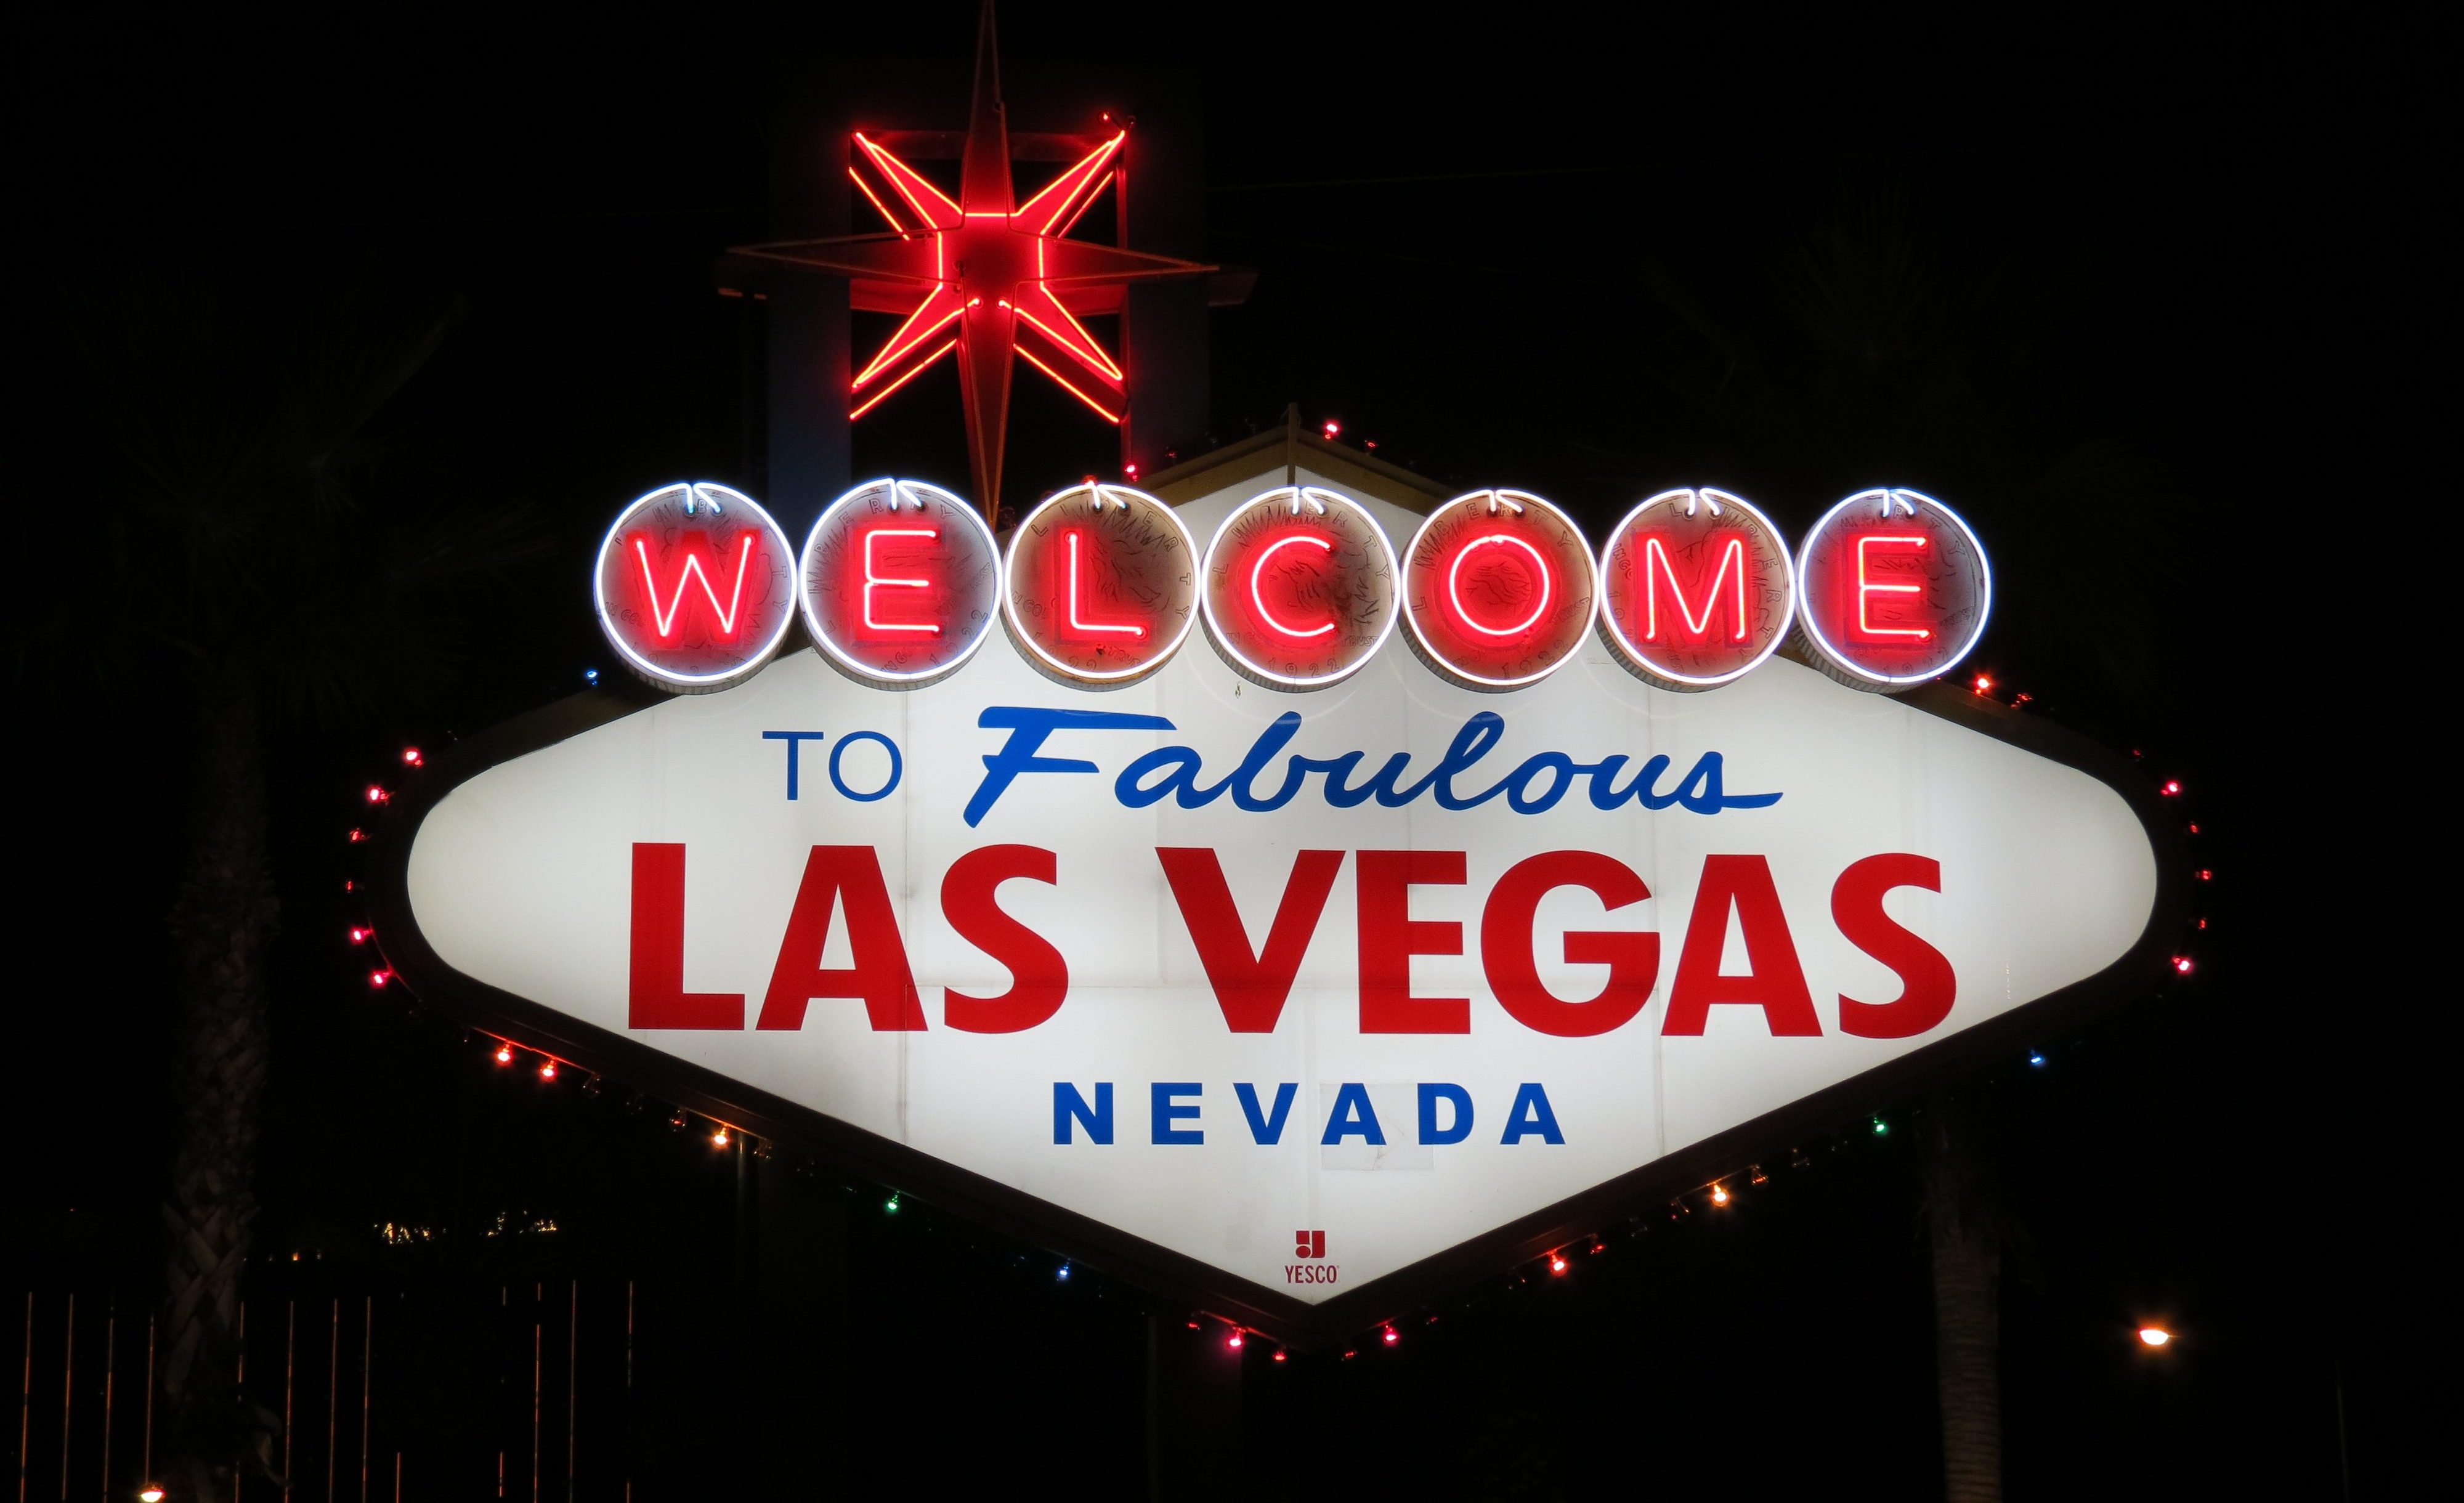 Nouveaux vols sans escale pour Las Vegas à partir de seulement 218